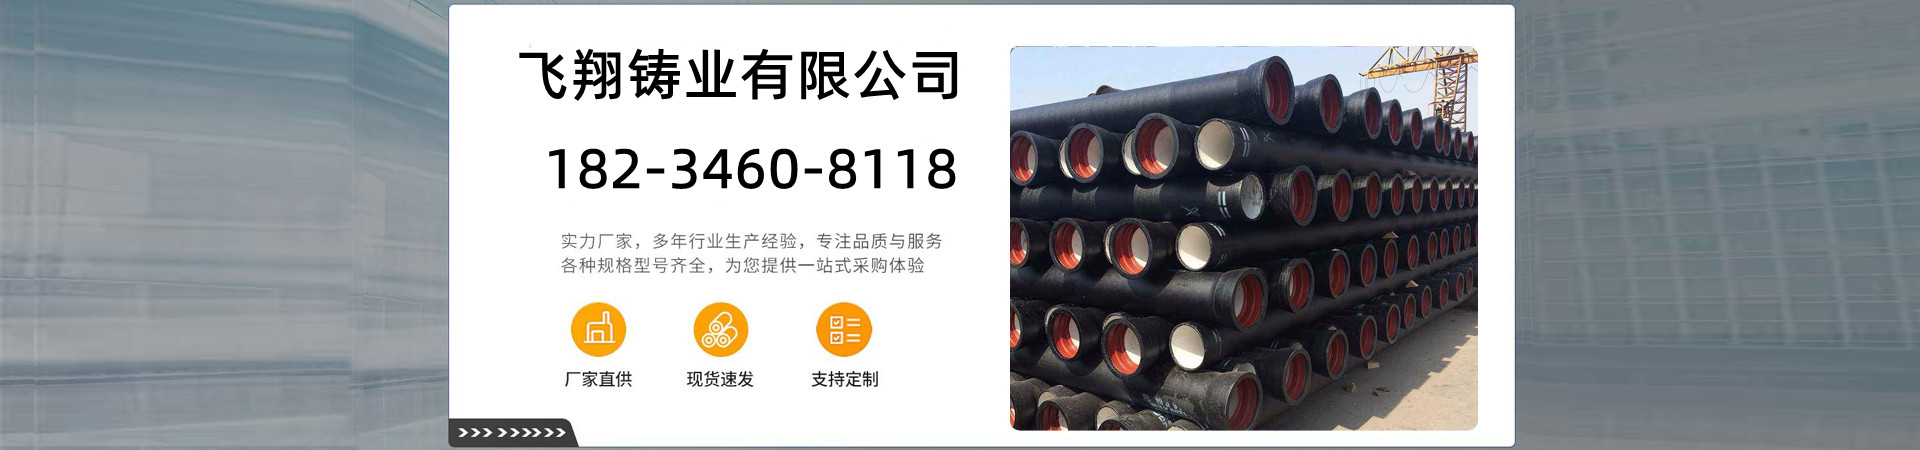 柔性铸铁排水管、滁州本地柔性铸铁排水管、滁州、滁州柔性铸铁排水管